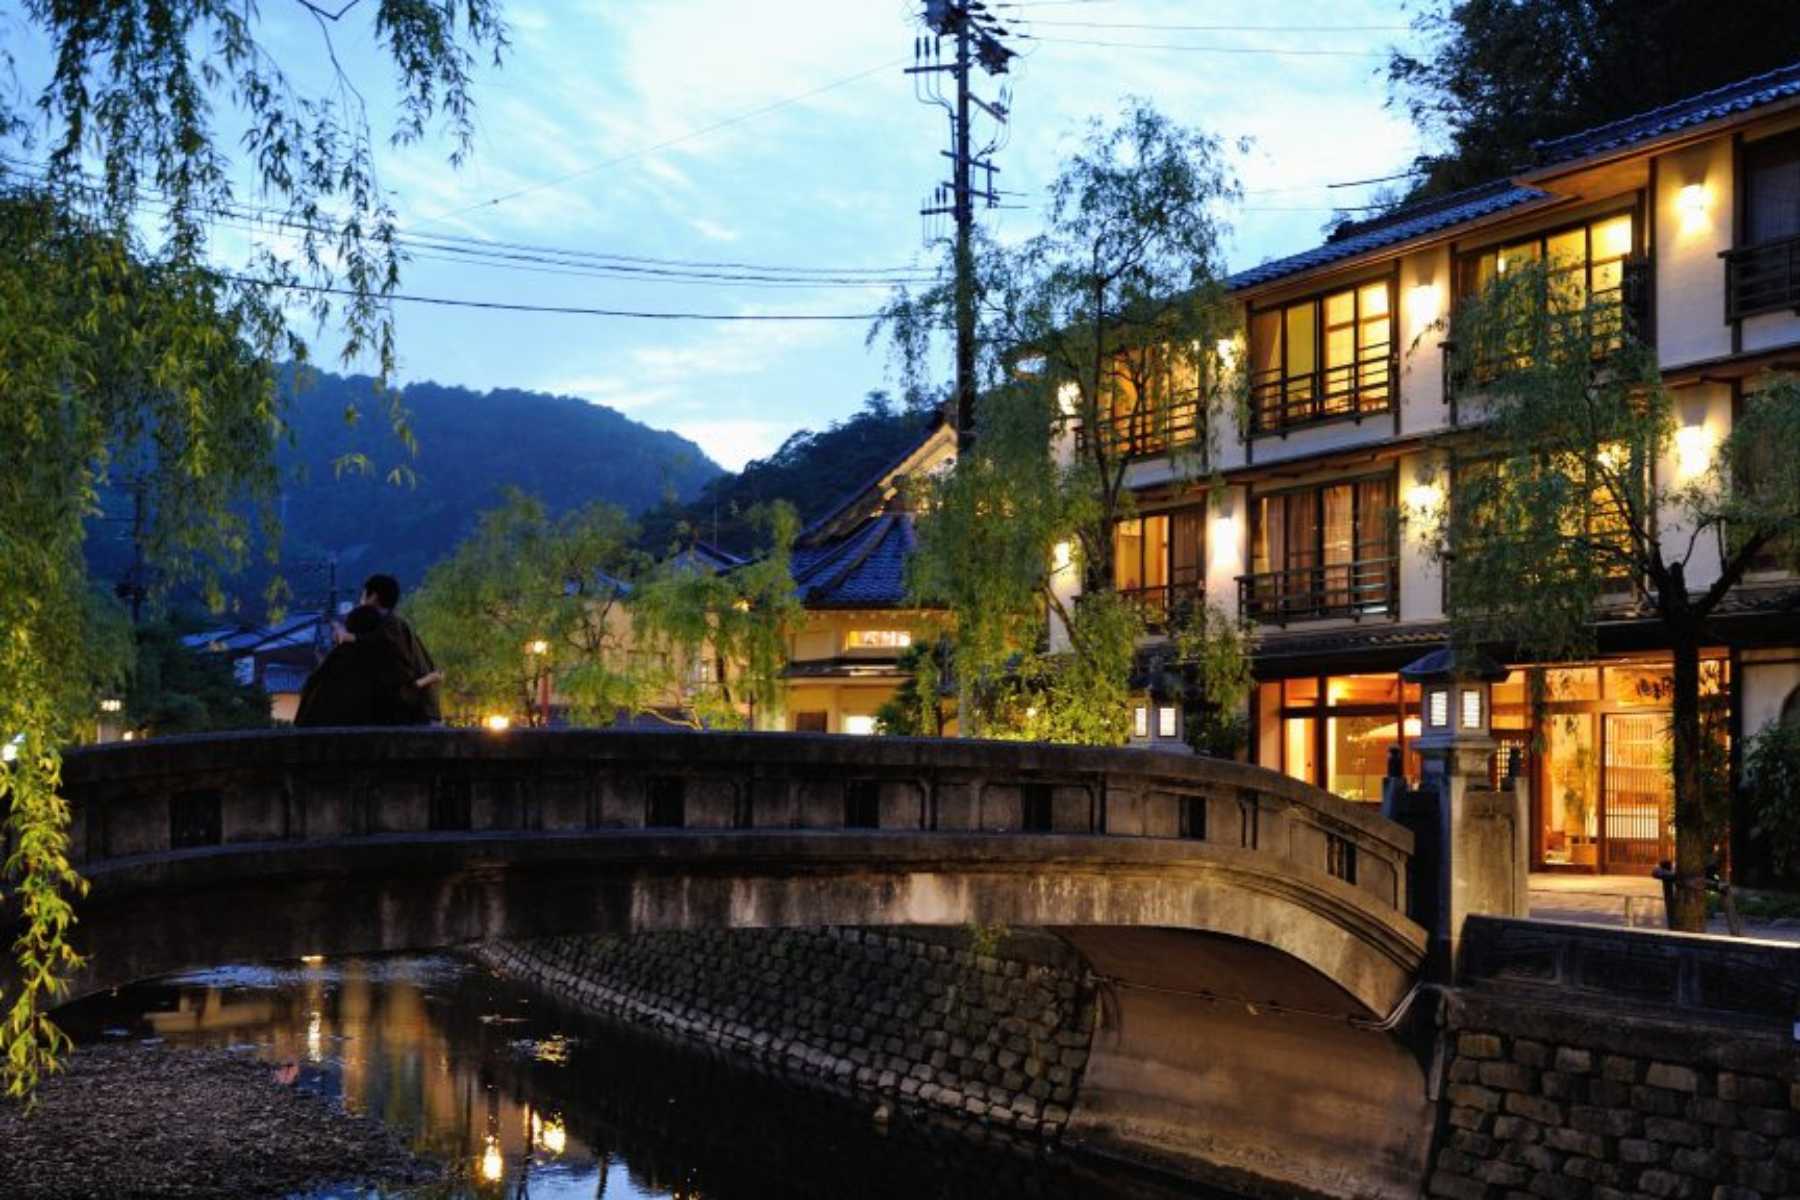 日本溫泉文學小鎮之旅！城崎溫泉訪文豪繆思絕景、美拍文青咖啡廳